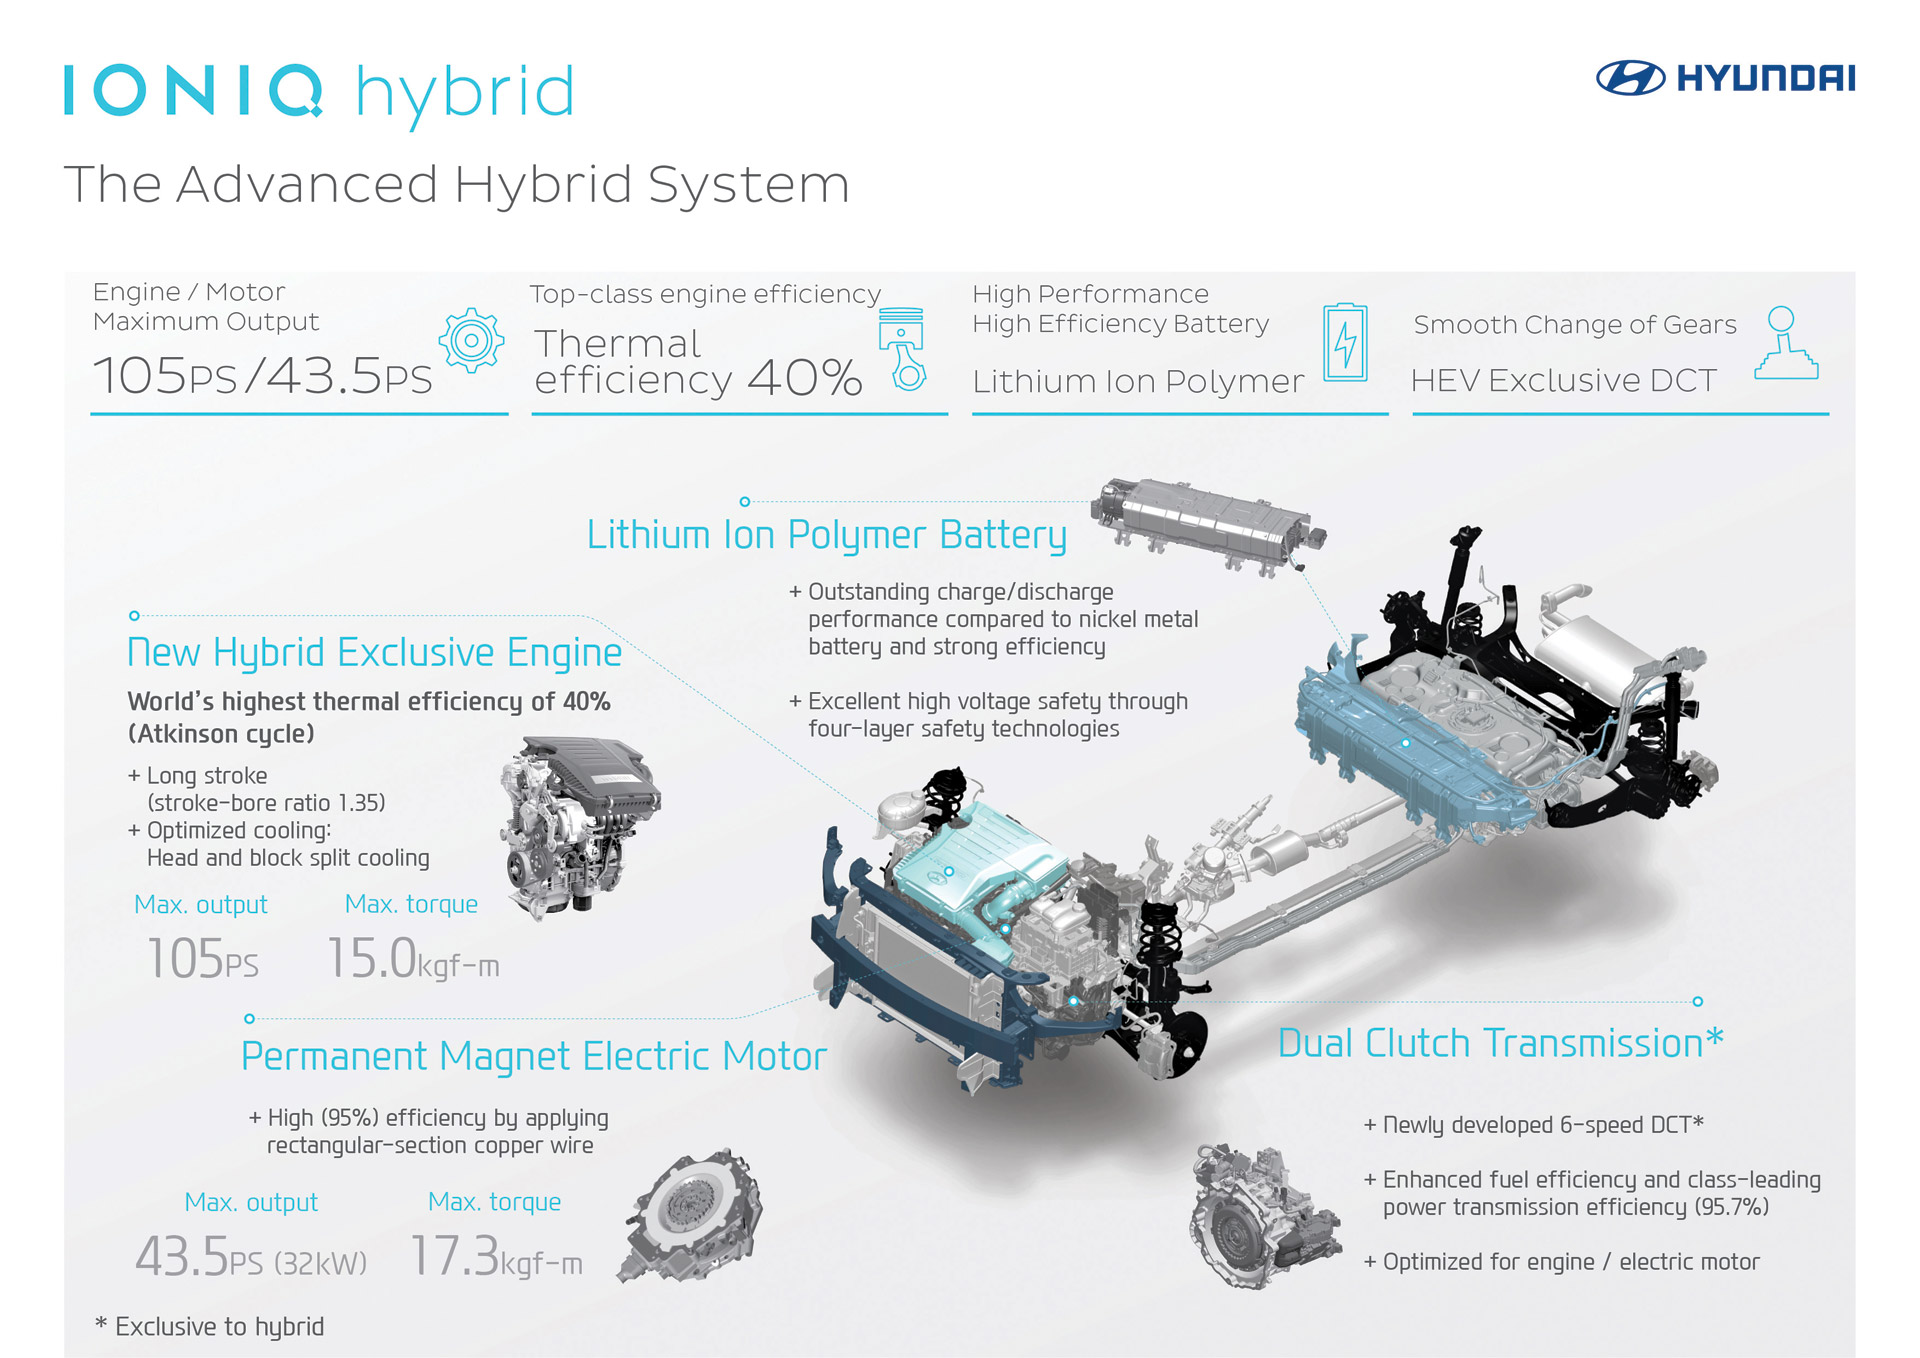 2017-hyundai-ioniq-hybrid-infographic